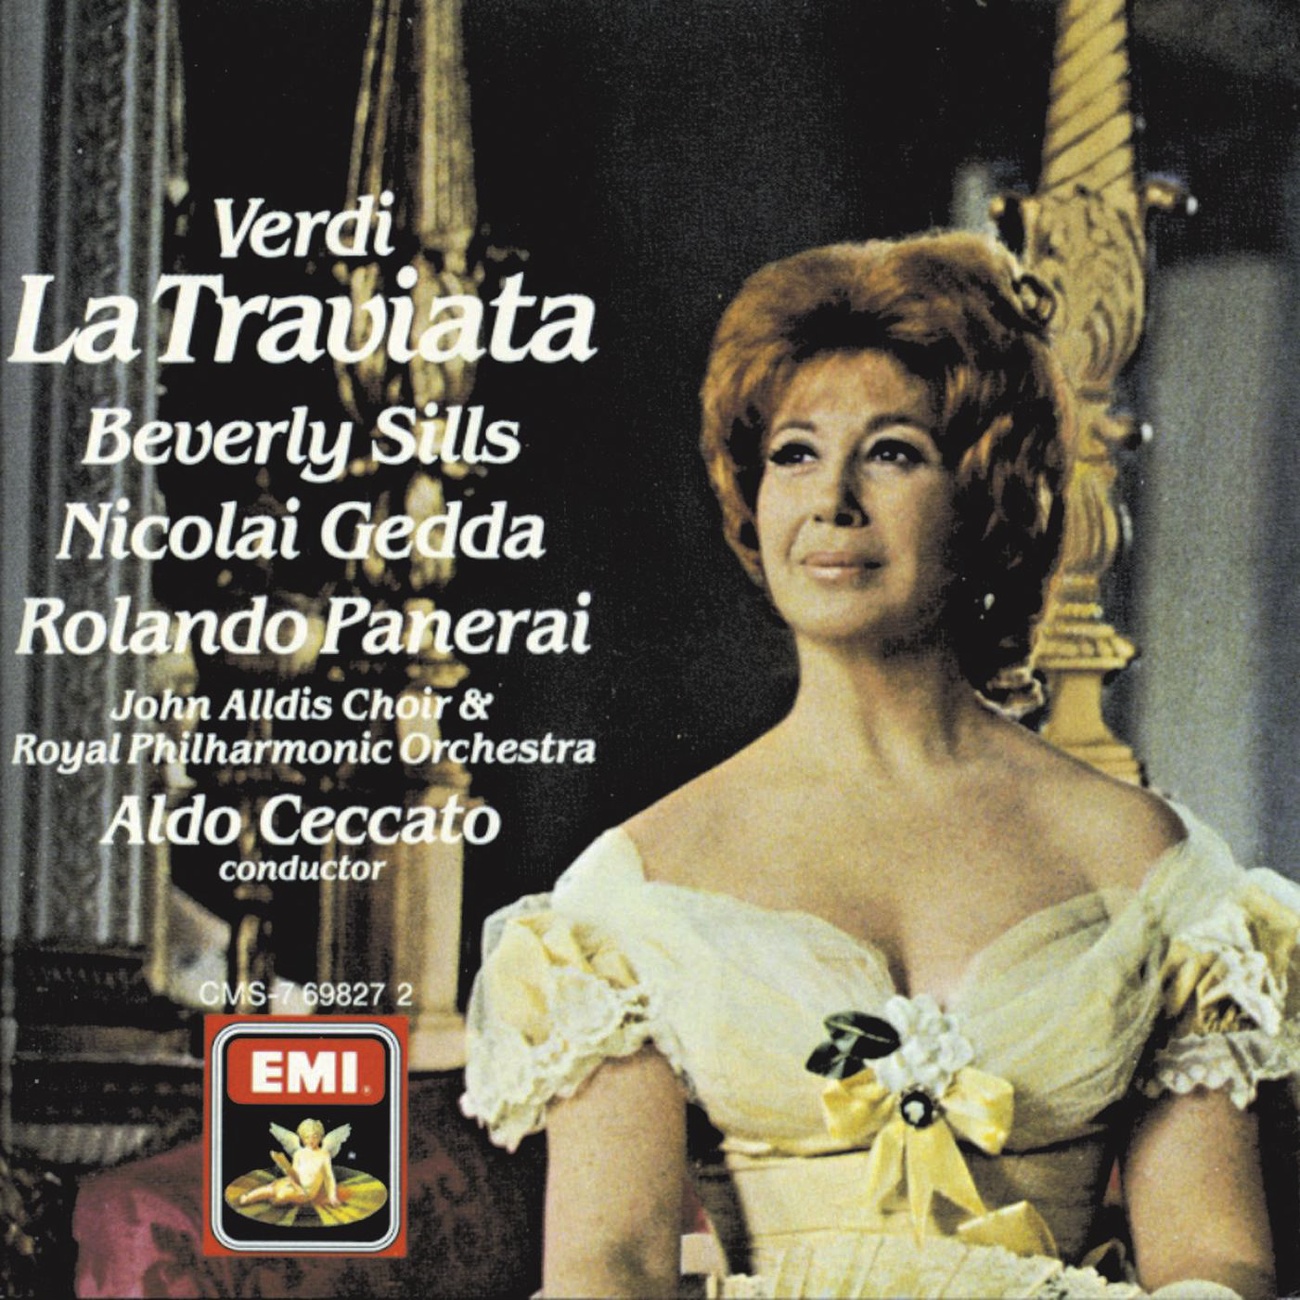 La Traviata (1988 Digital Remaster), Act III: Addio , del passato (Violetta)